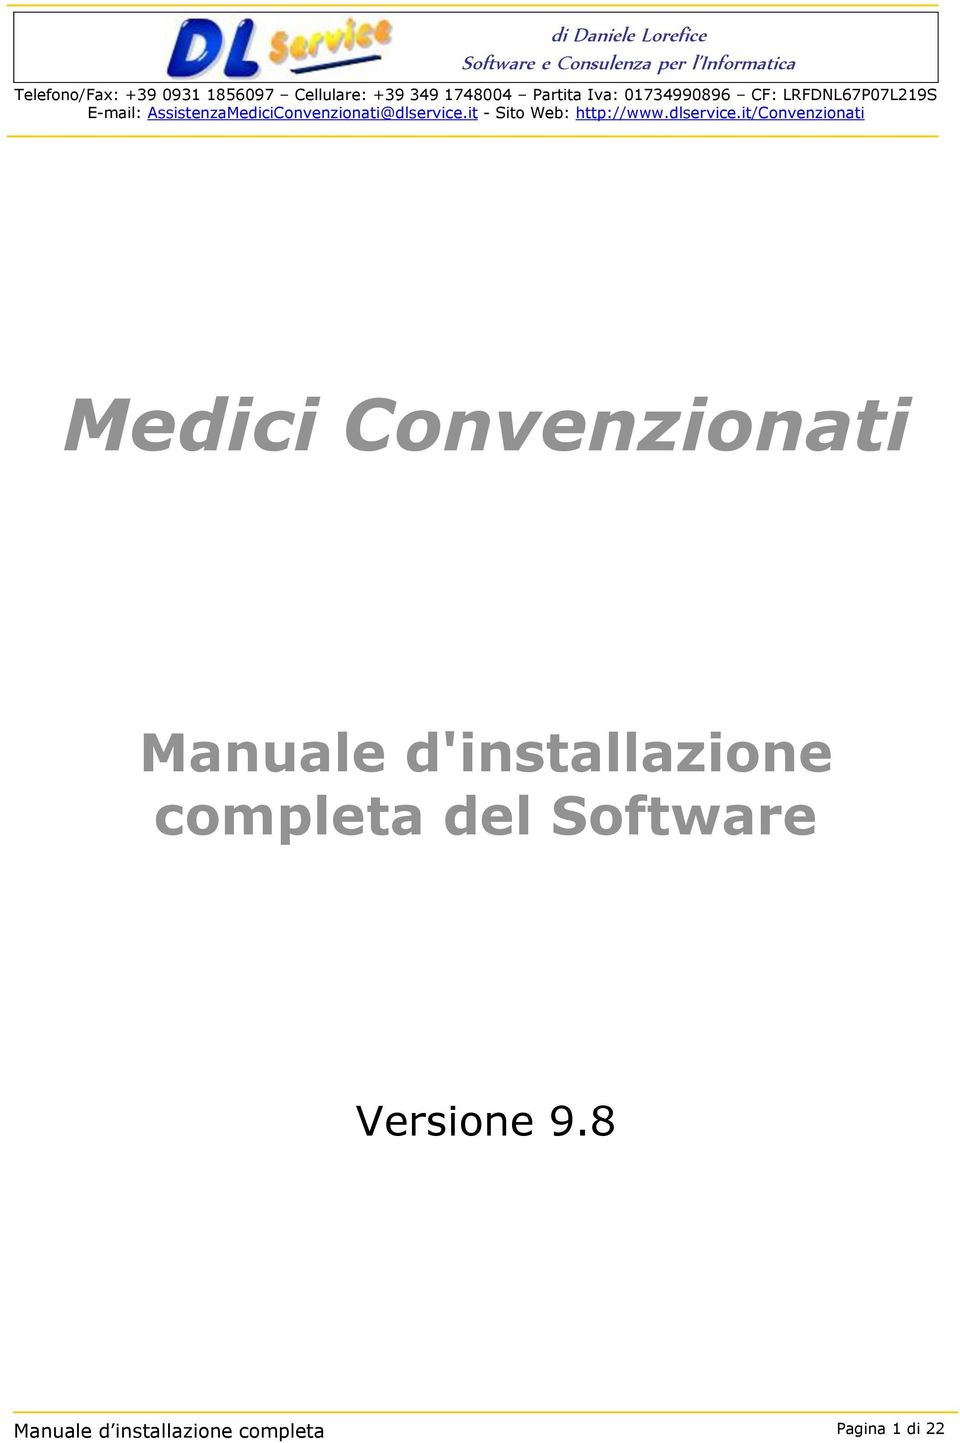 Software Versione 9.